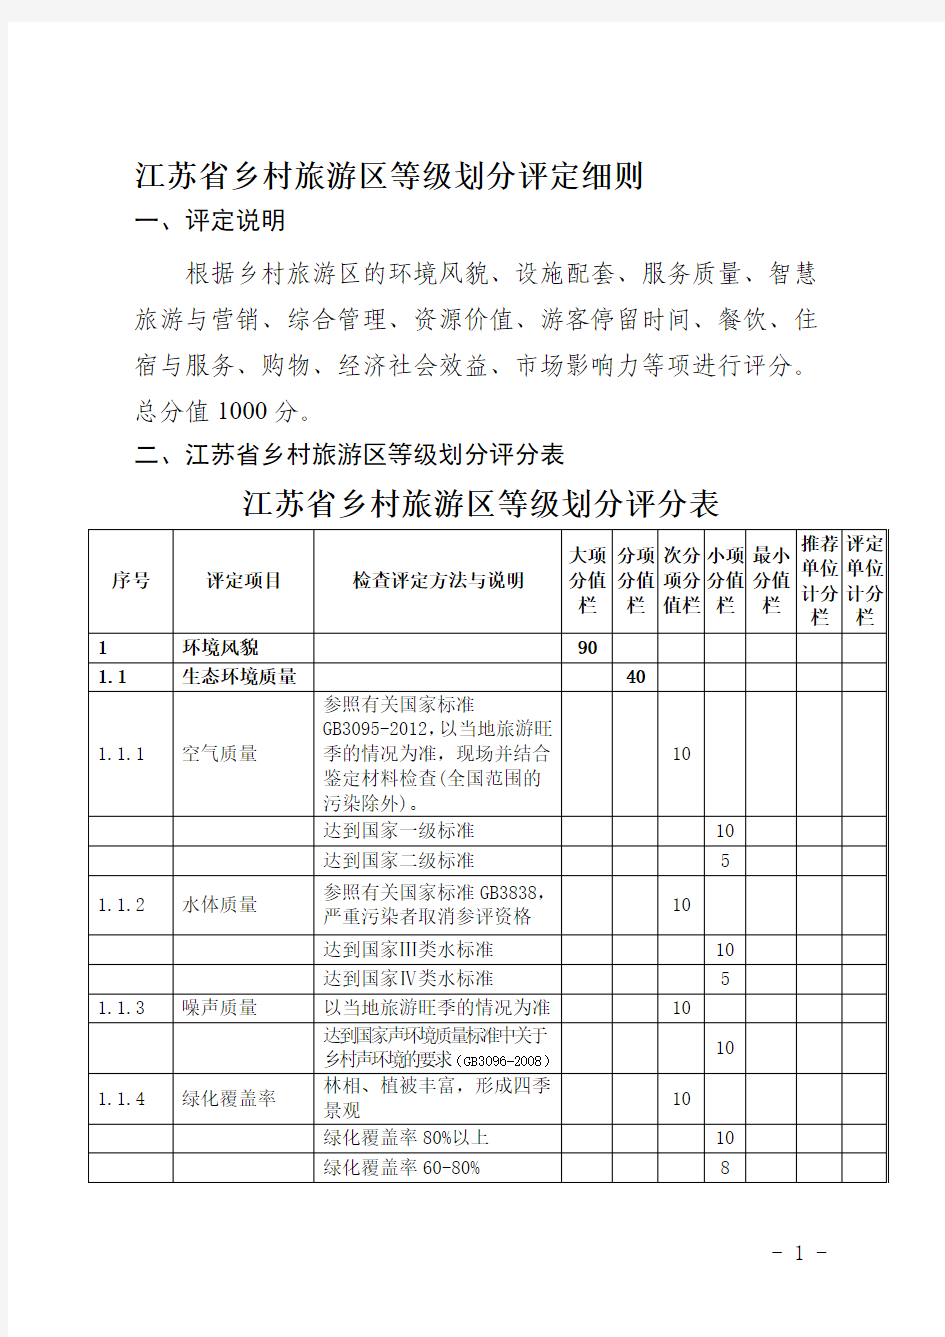 江苏省乡村旅游区等级划分评定细则(2015)